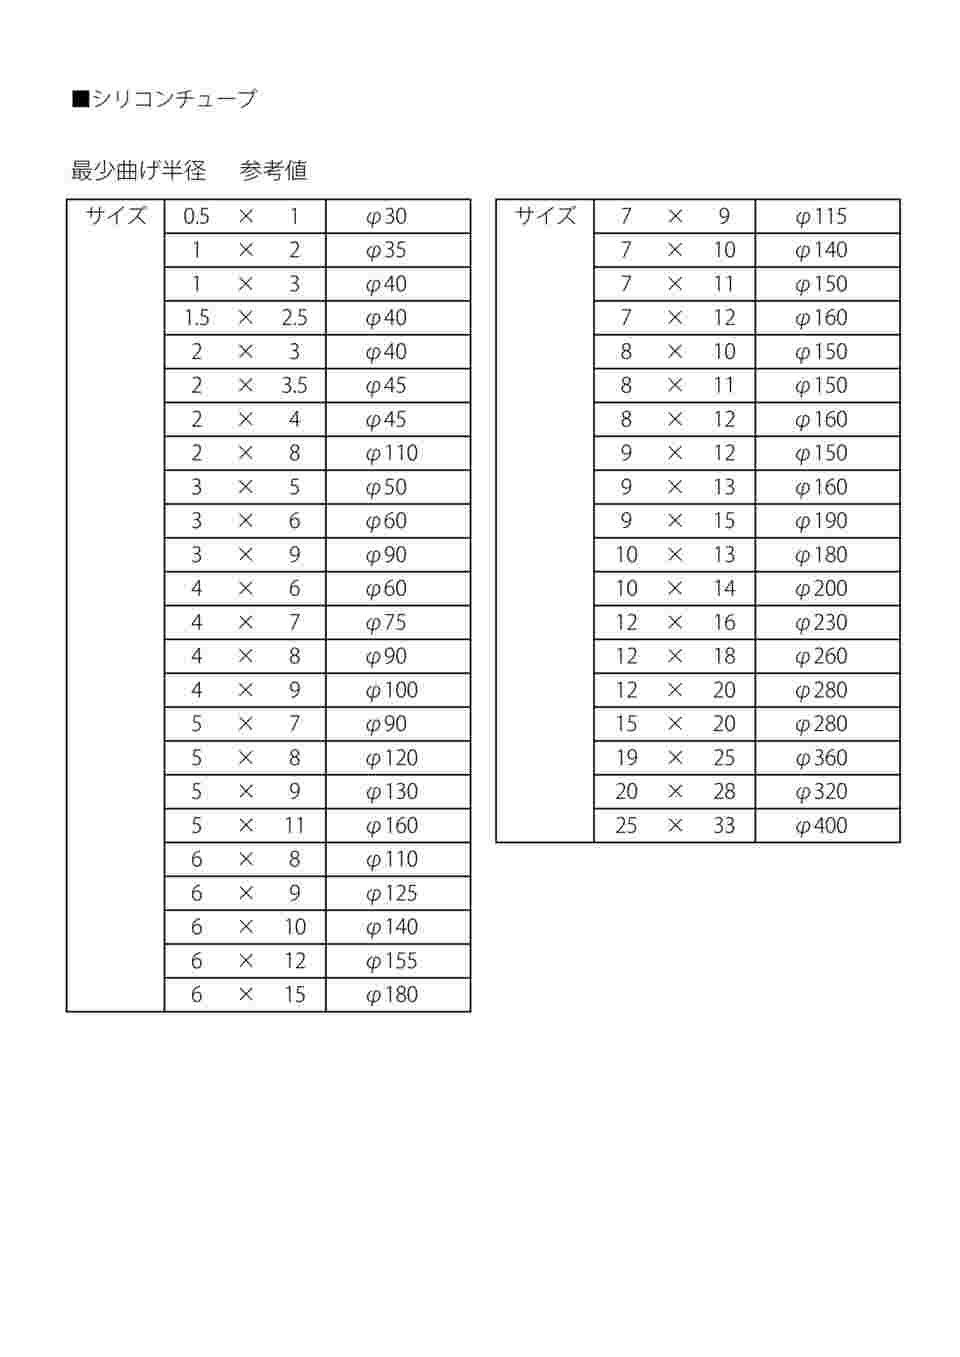 9-869-24 ラボラン(R)シリコンチューブ 15×20 1巻(11m) 【AXEL】 アズワン